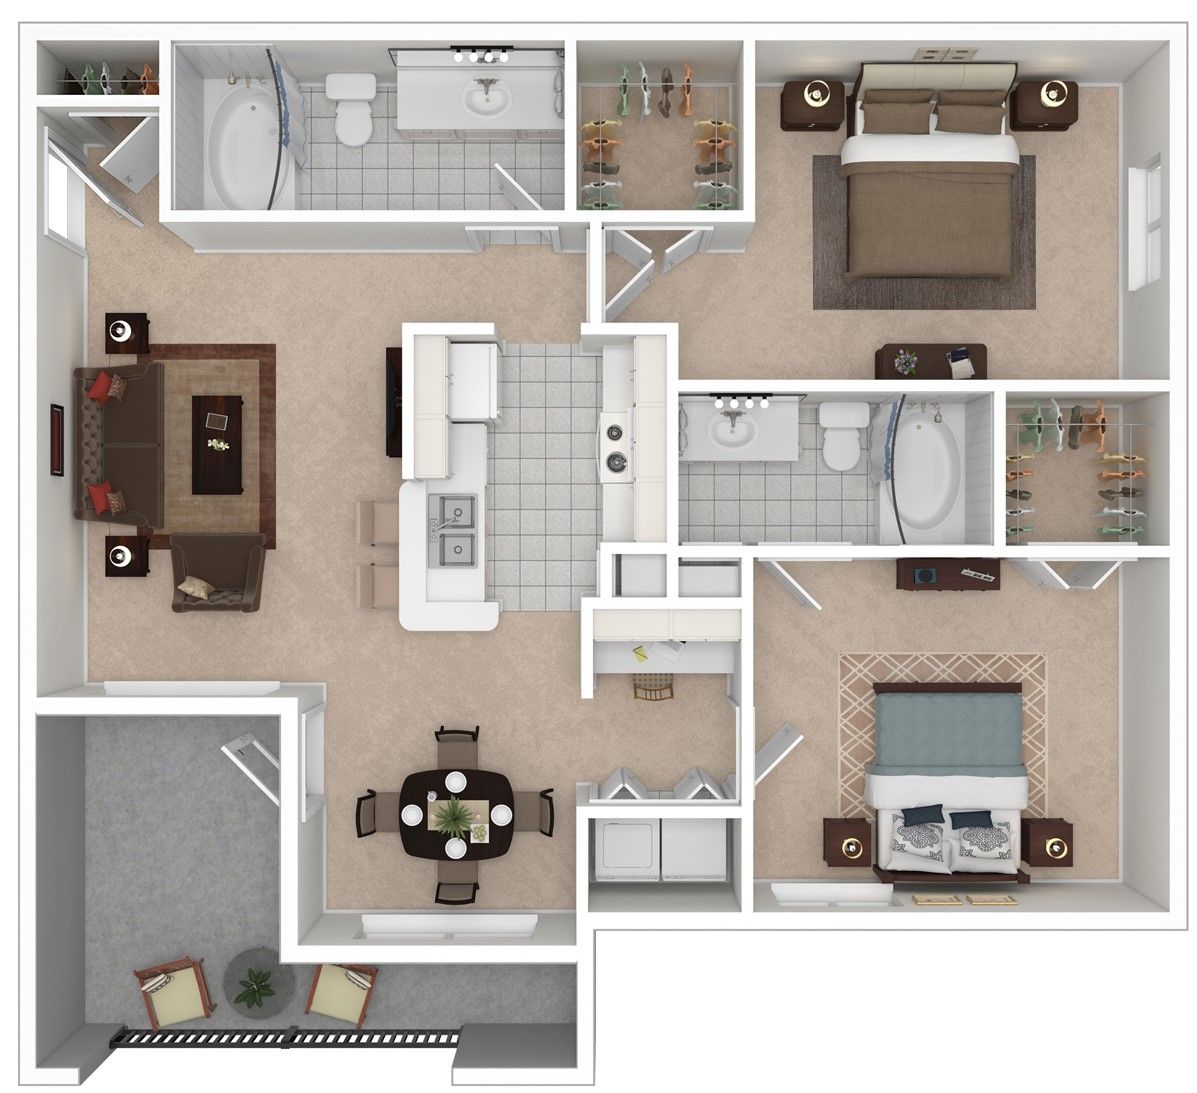 2 bedroom floor plan 